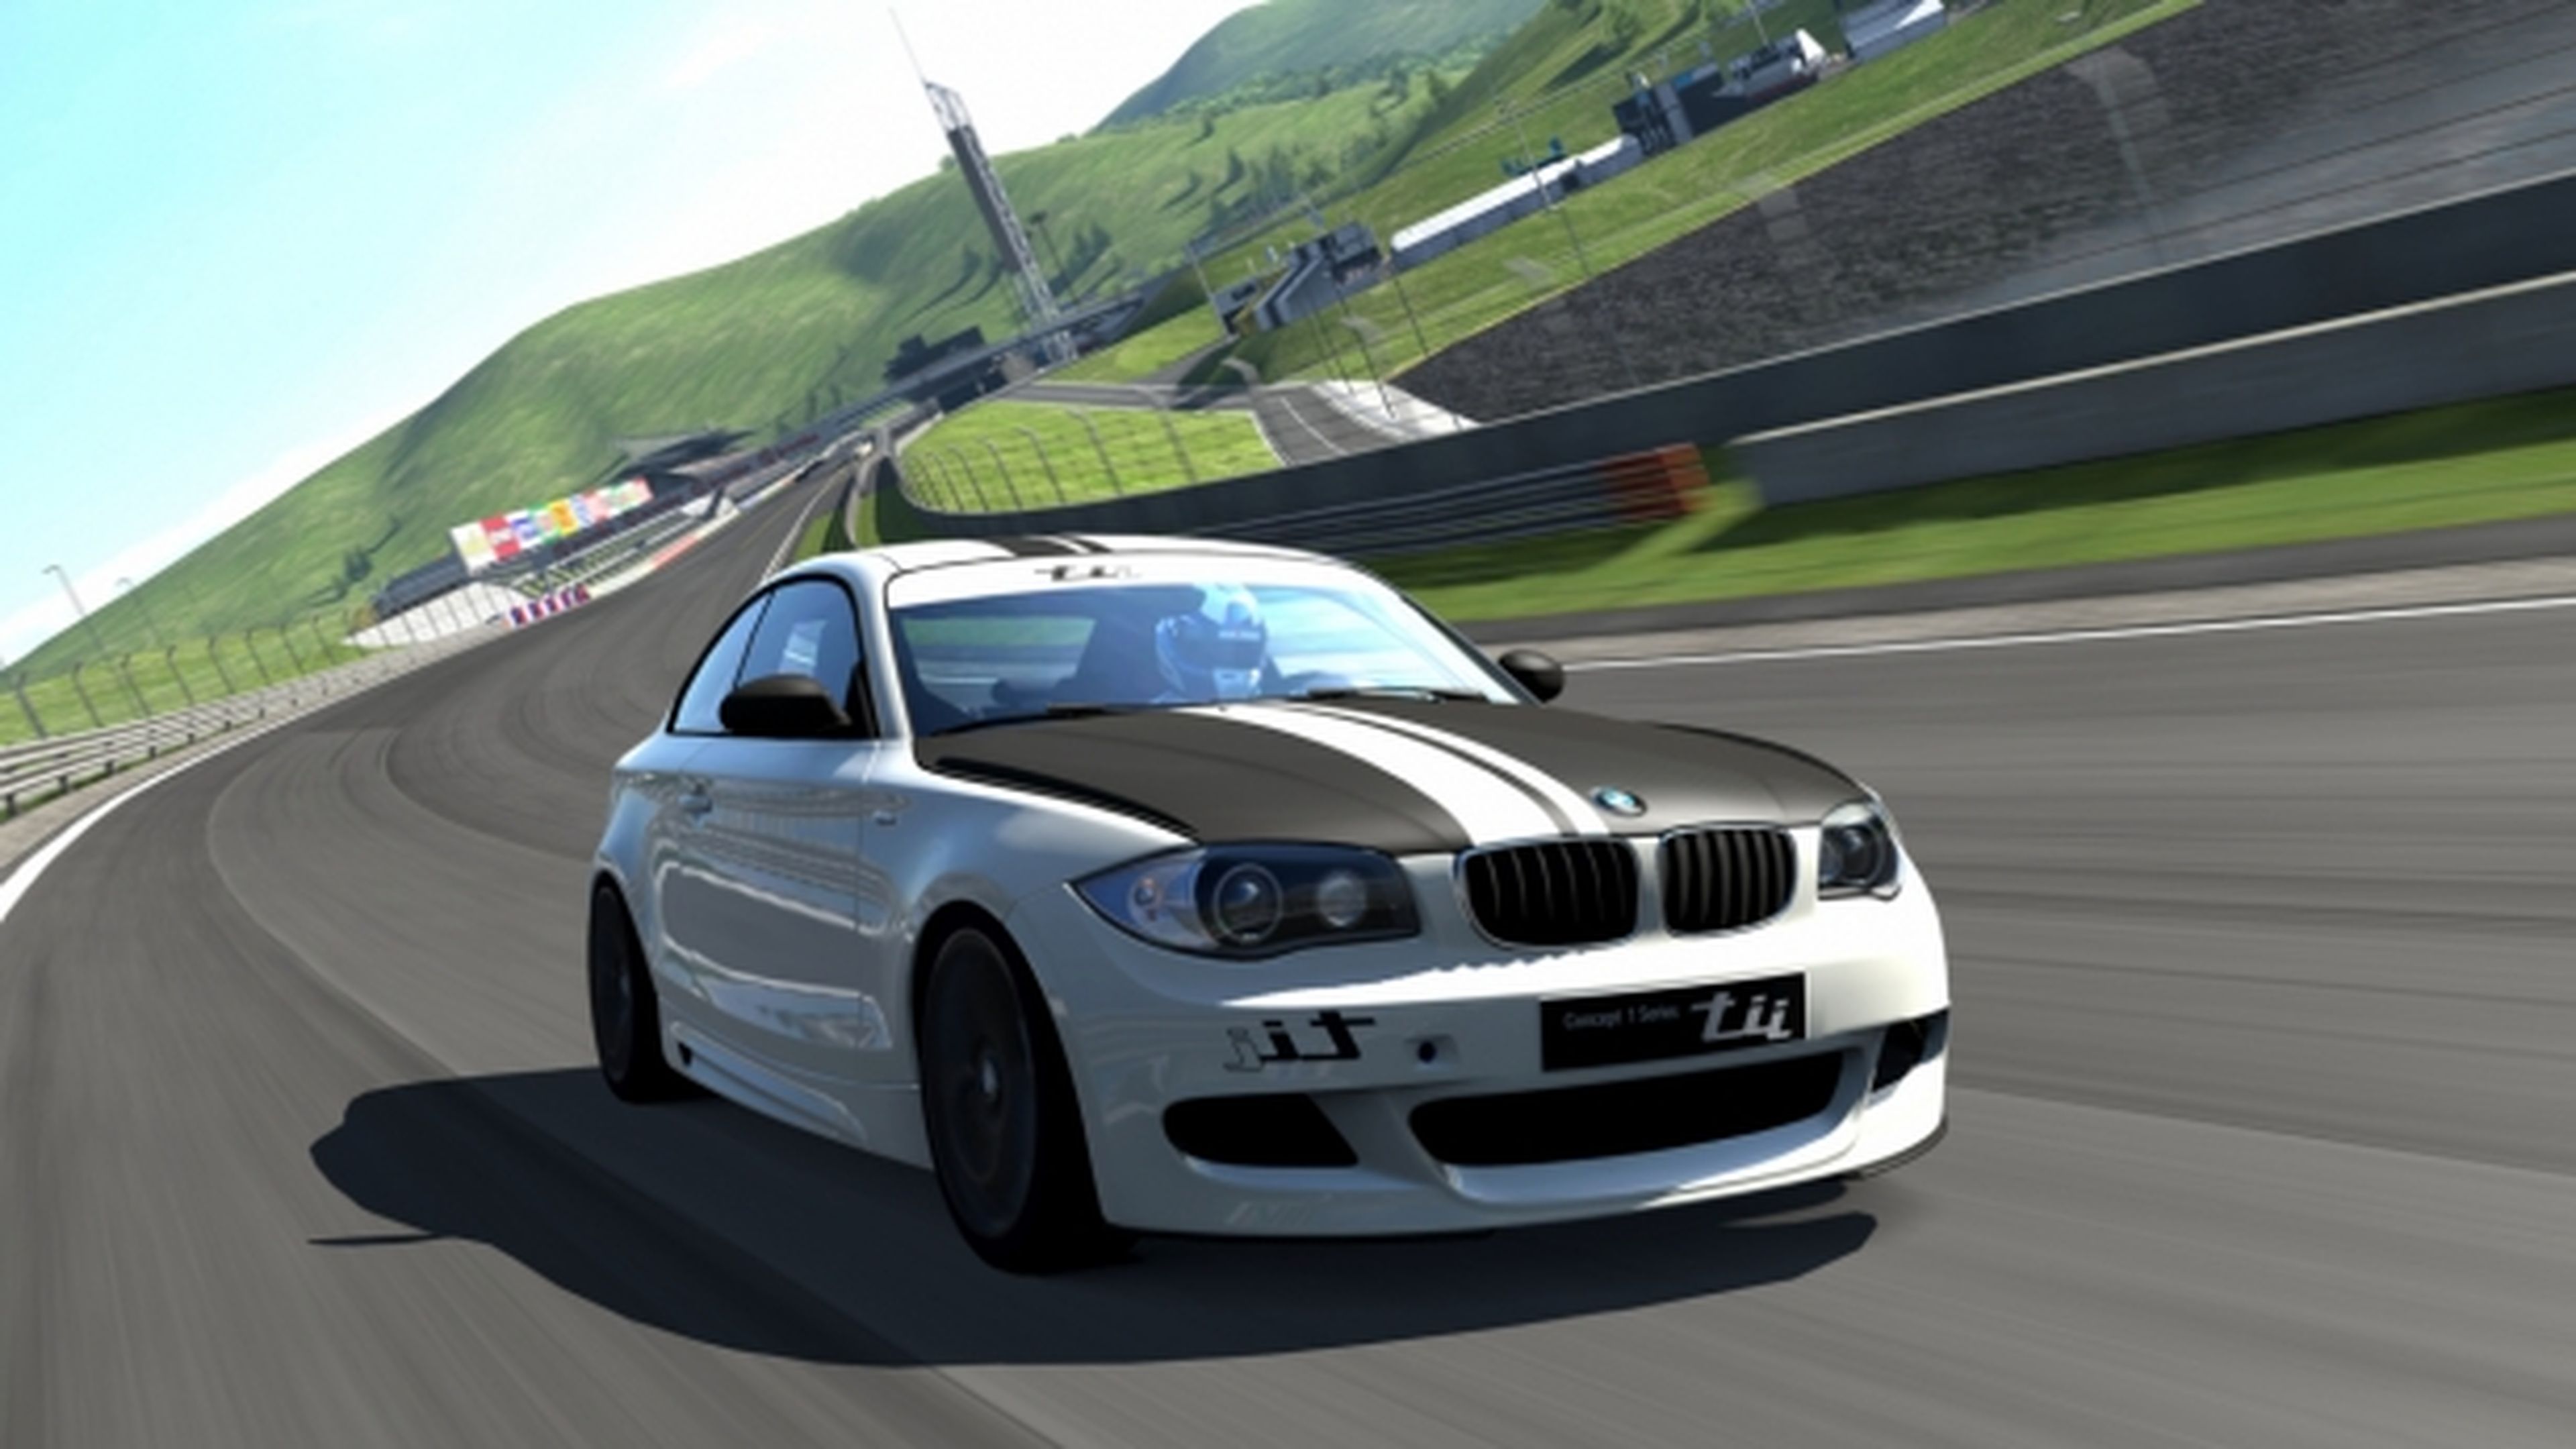 Gran Turismo 5 cerrará sus servidores online en 2014